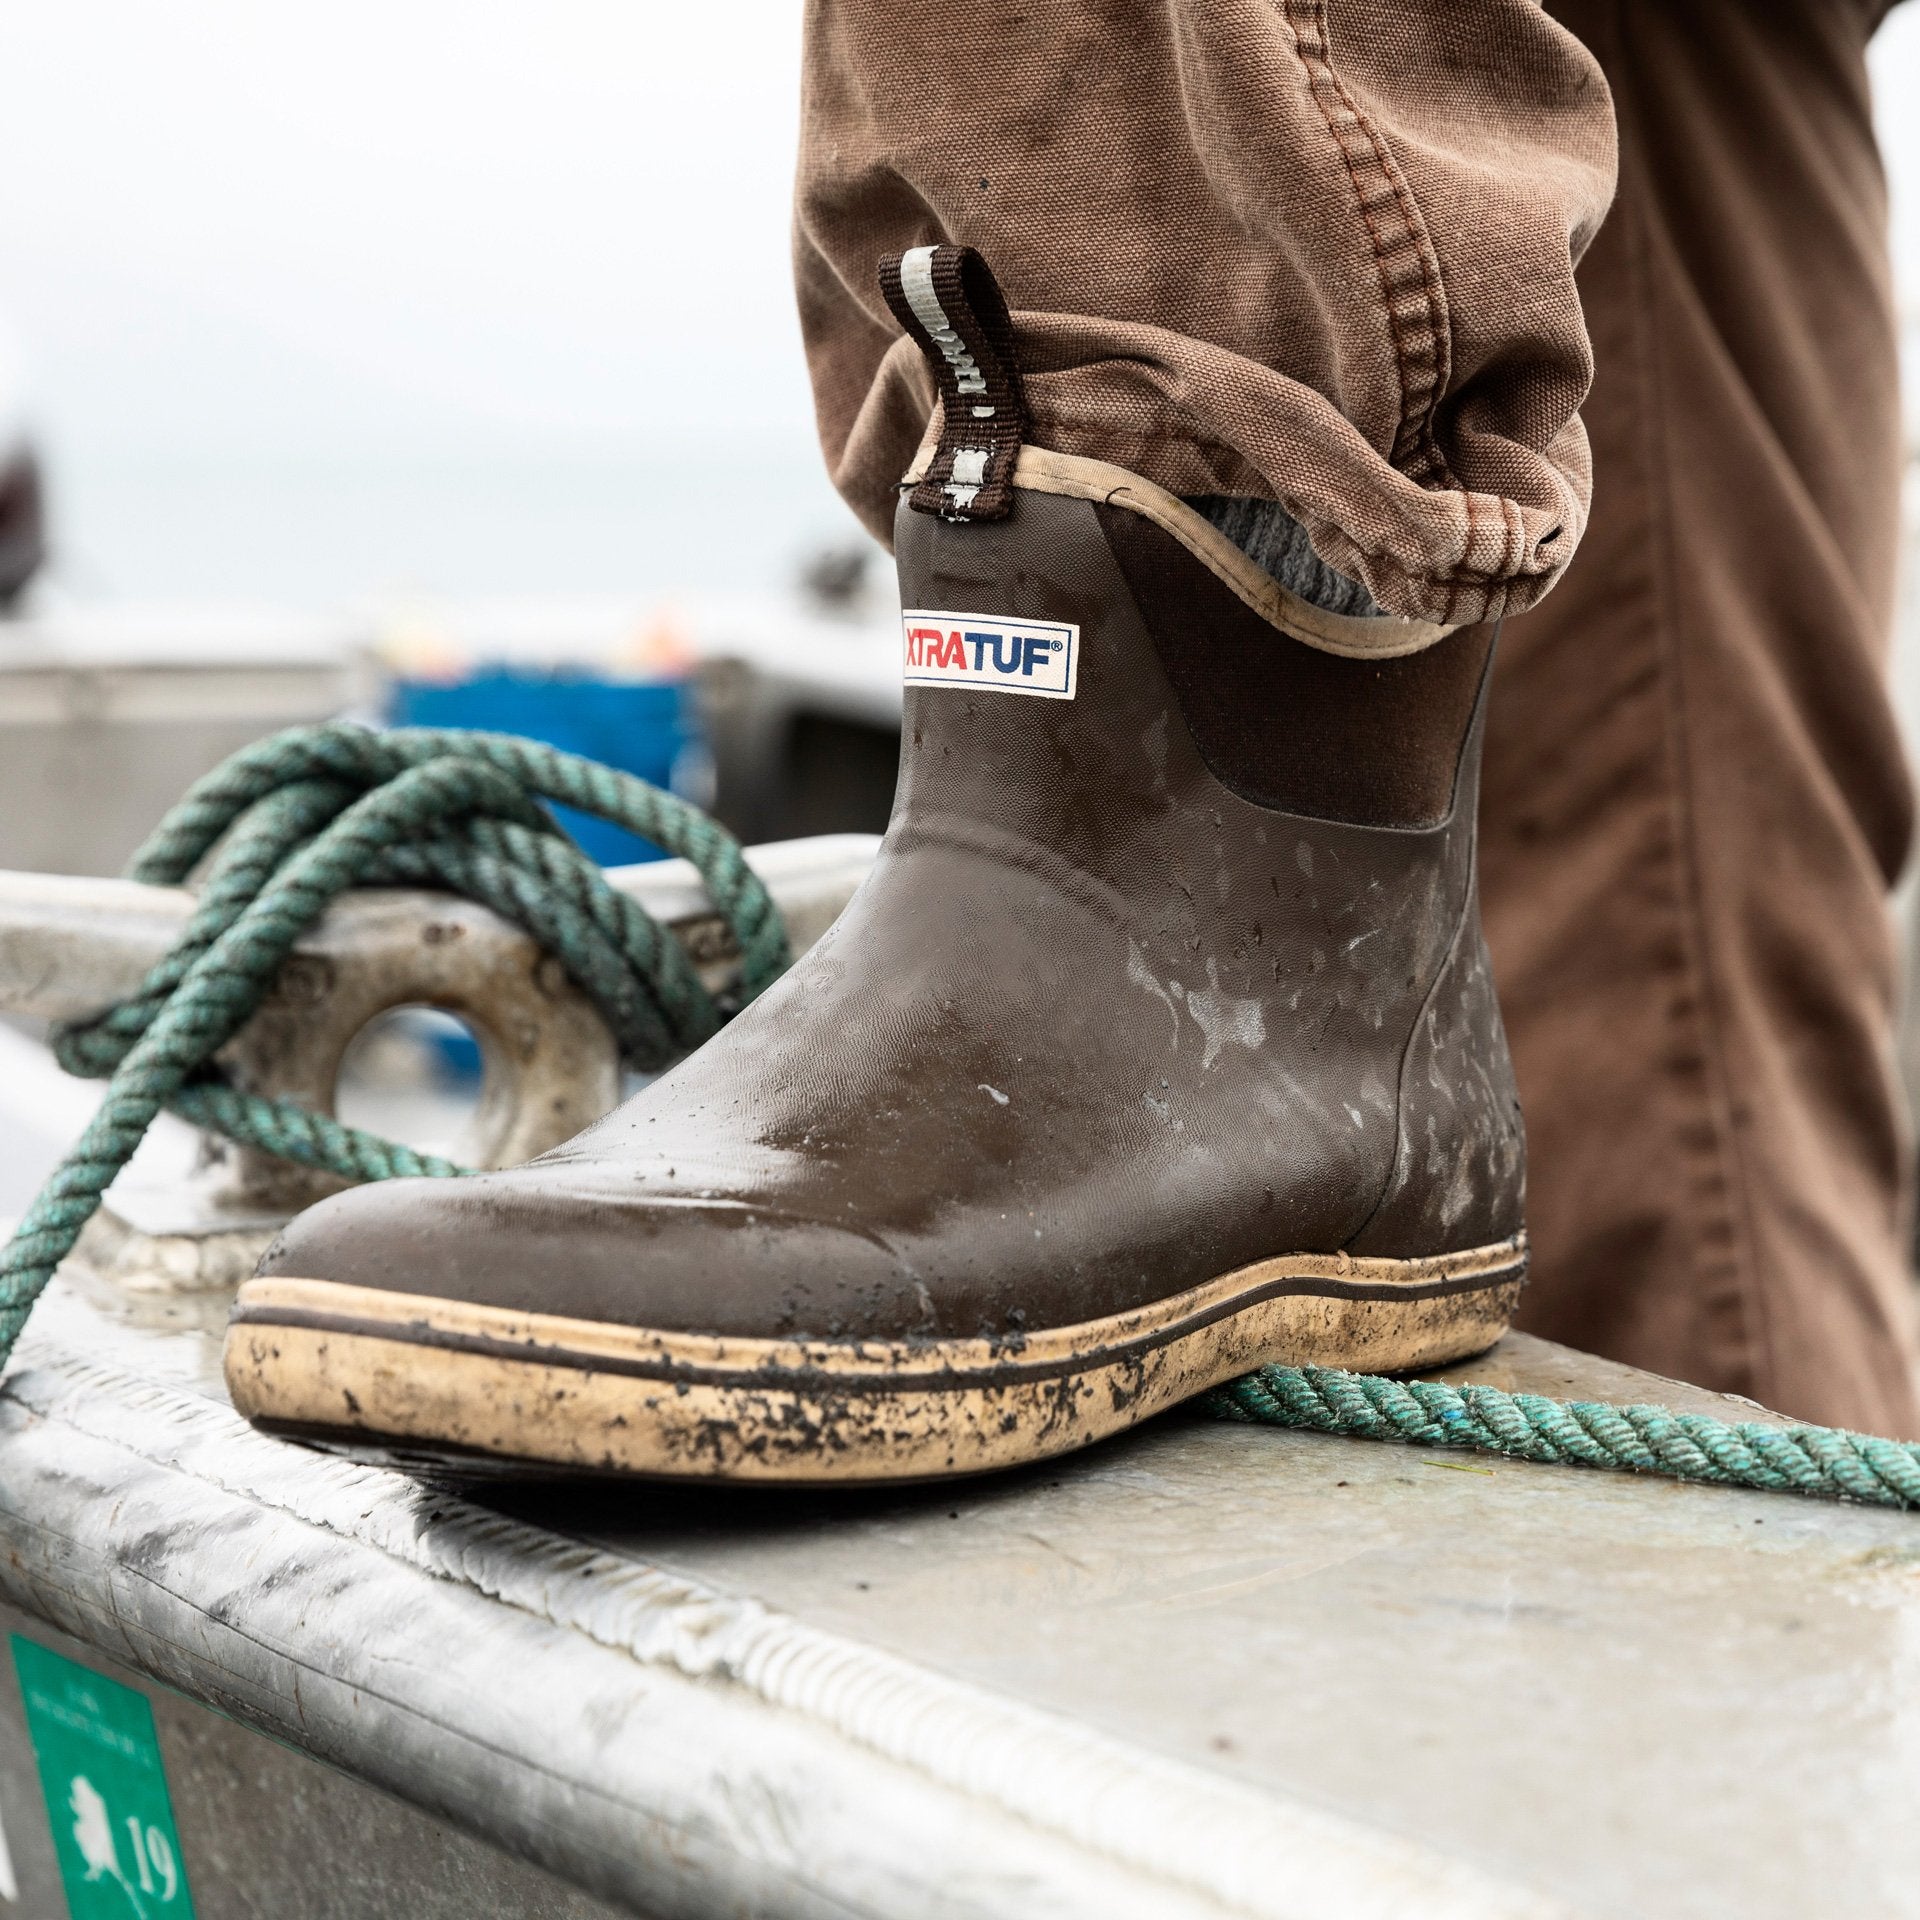 Xtratuf Men's 6" Ankle Deck Waterproof Boot - Chocolate / Tan - 22734  - Overlook Boots